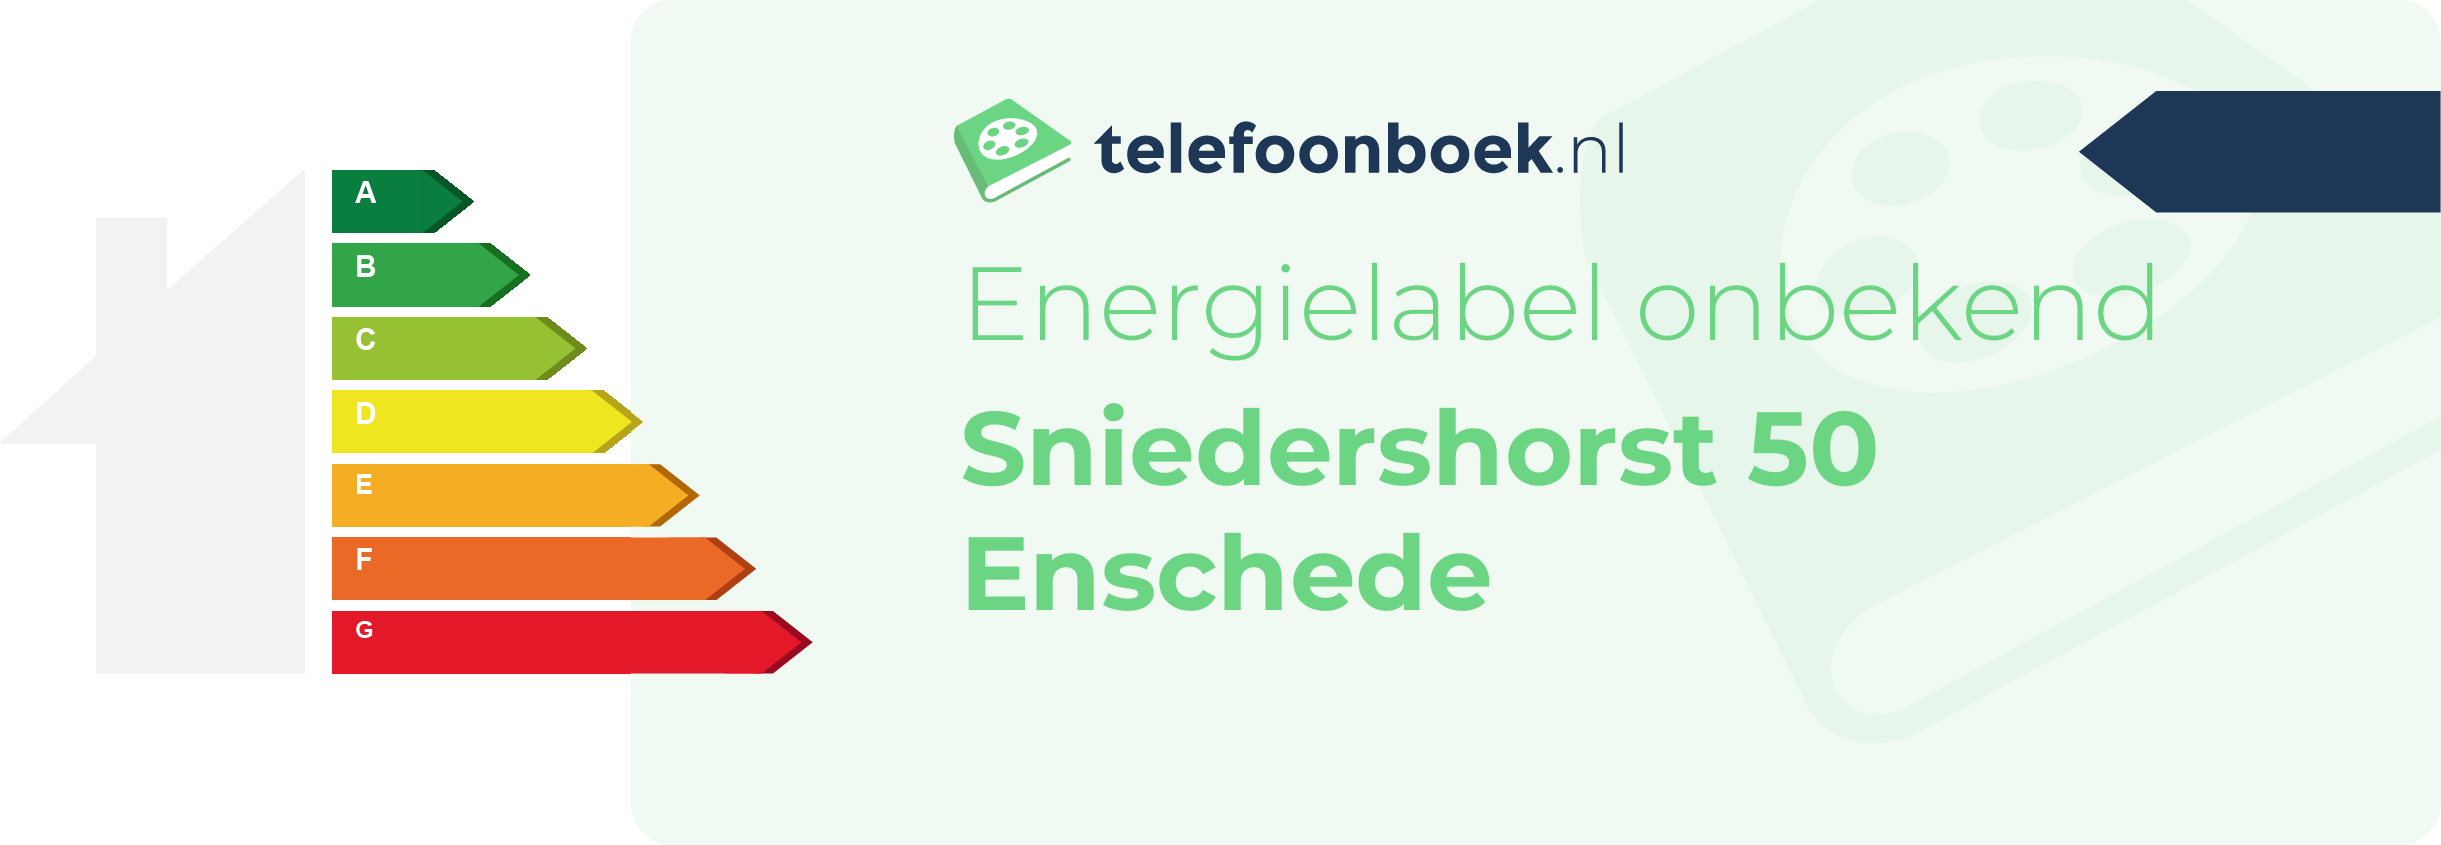 Energielabel Sniedershorst 50 Enschede